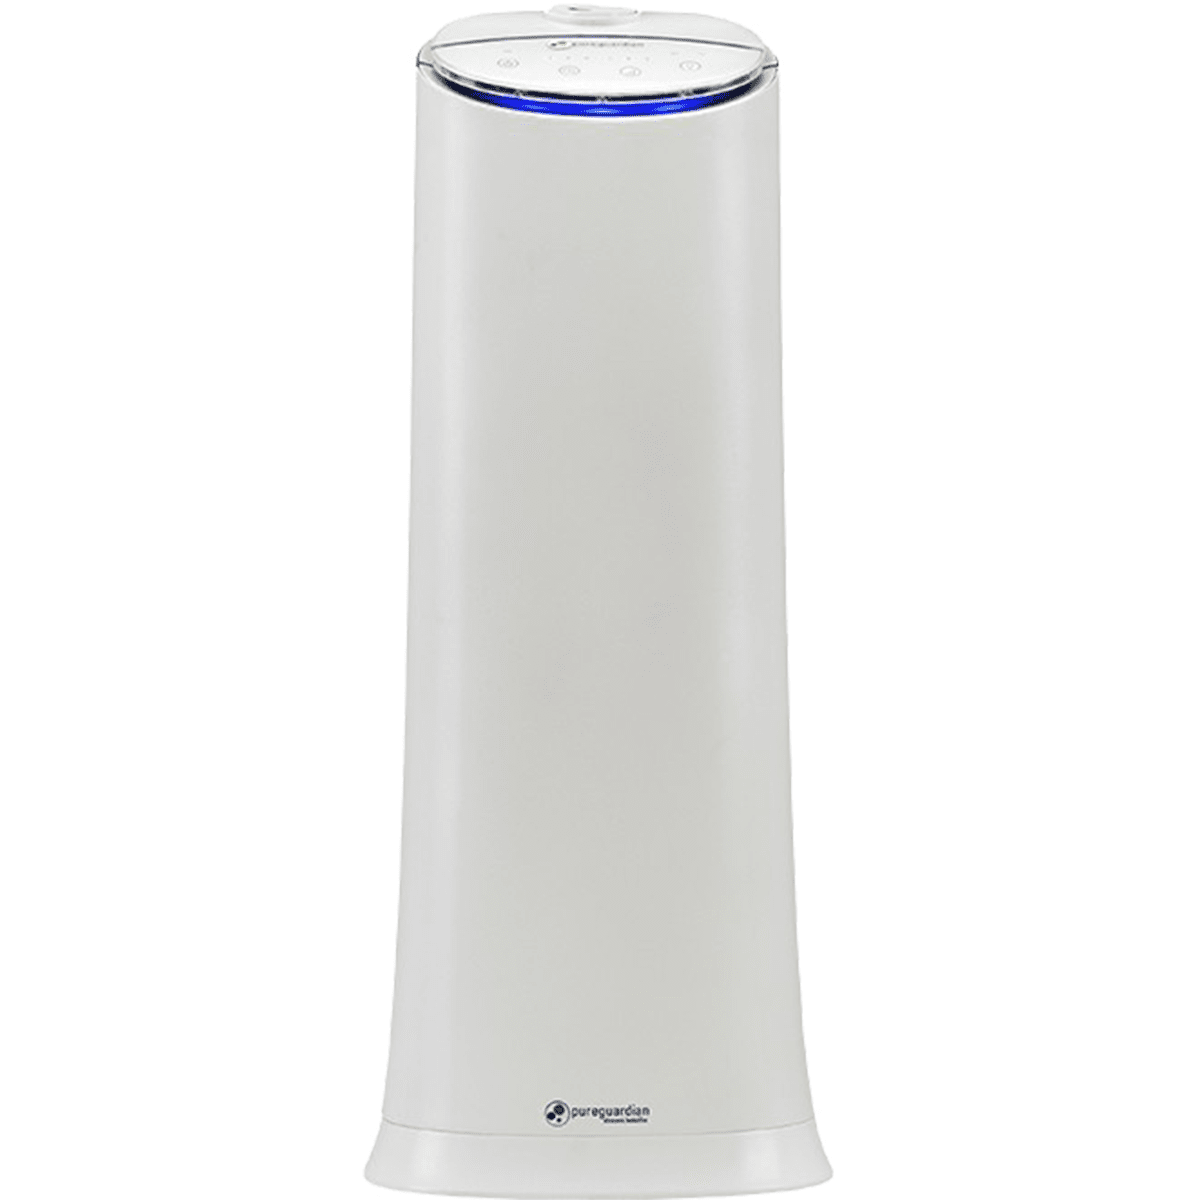 Pureguardian 100-hour Ultrasonic Tower Humidifier - White (h3200wca)